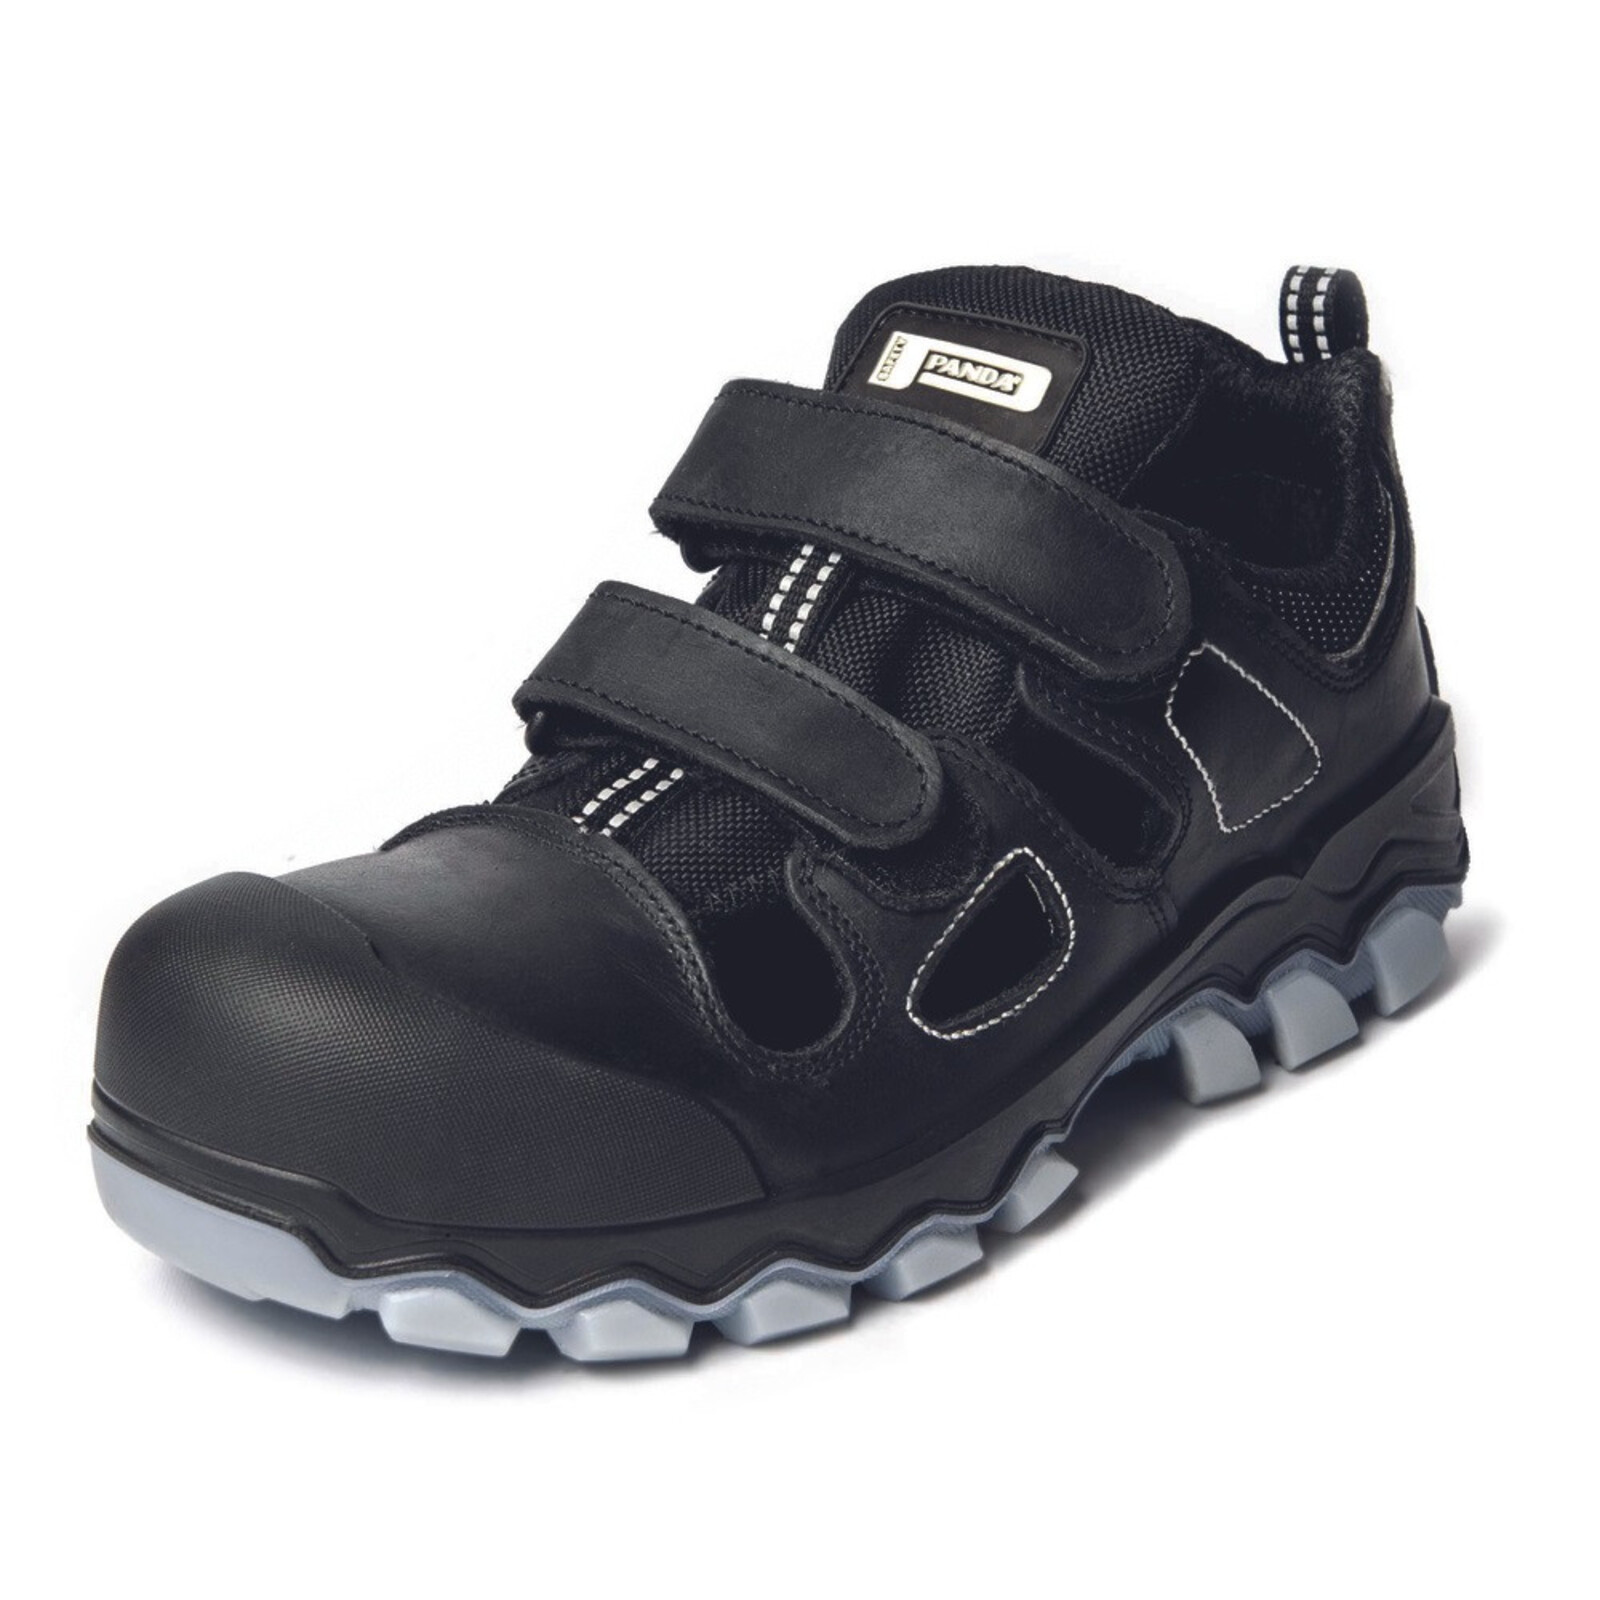 Bezpečnostné sandále Panda Techo No. Two MF S1P SRC - veľkosť: 42, farba: čierna/sivá